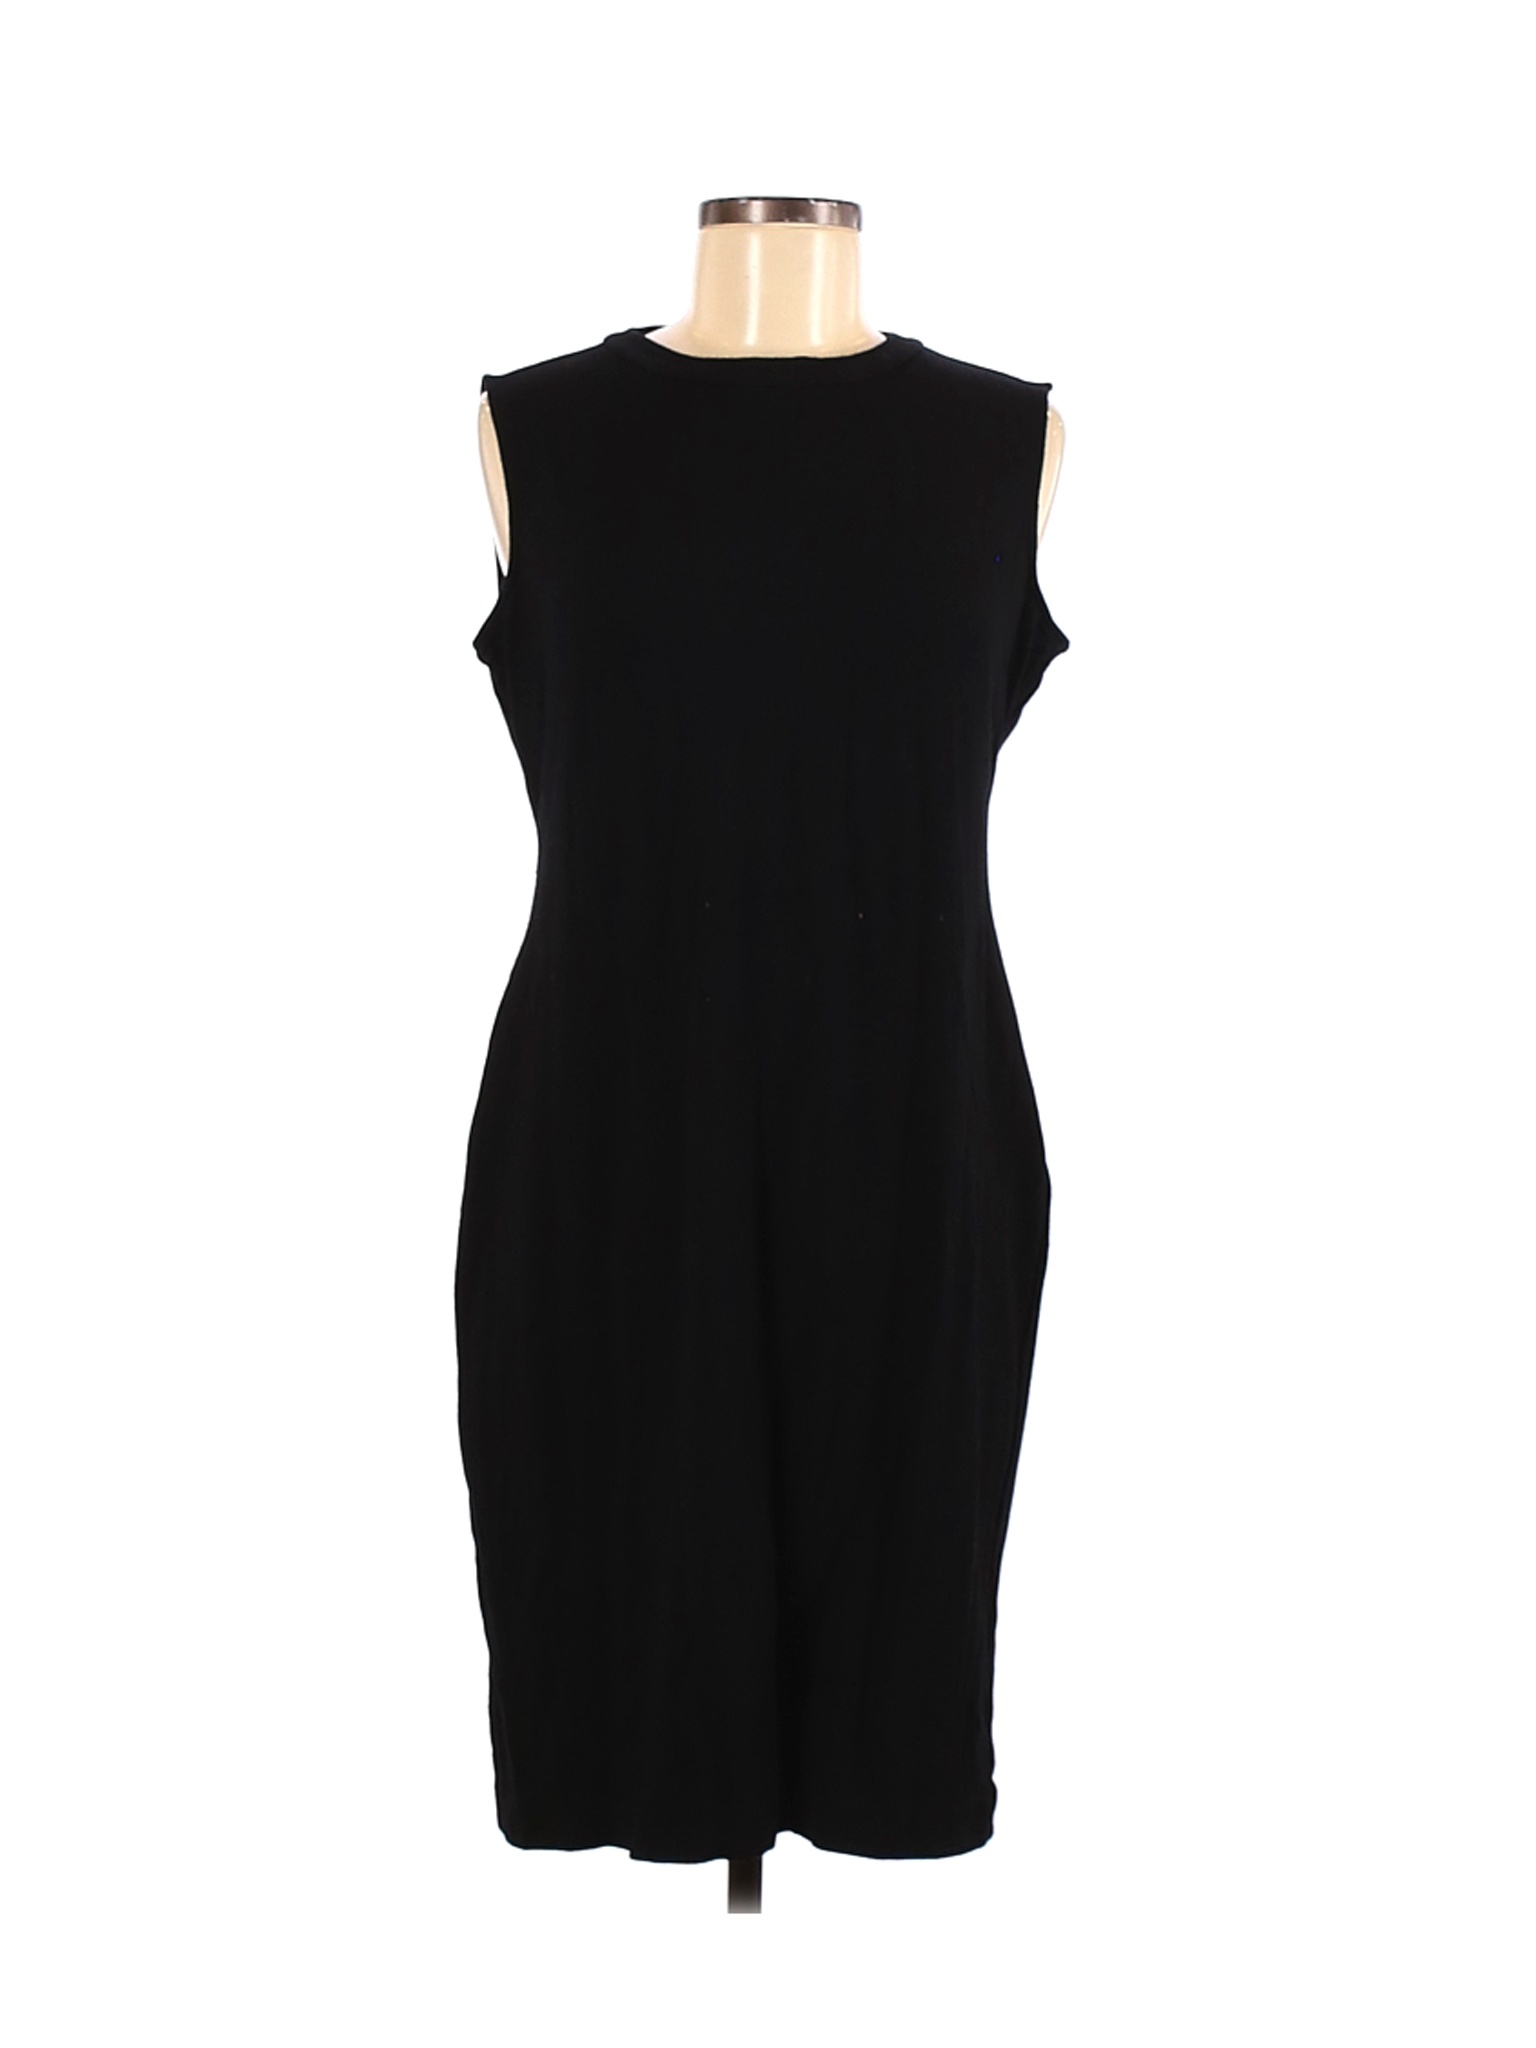 Saks Fifth Avenue Women Black Casual Dress 12 | eBay